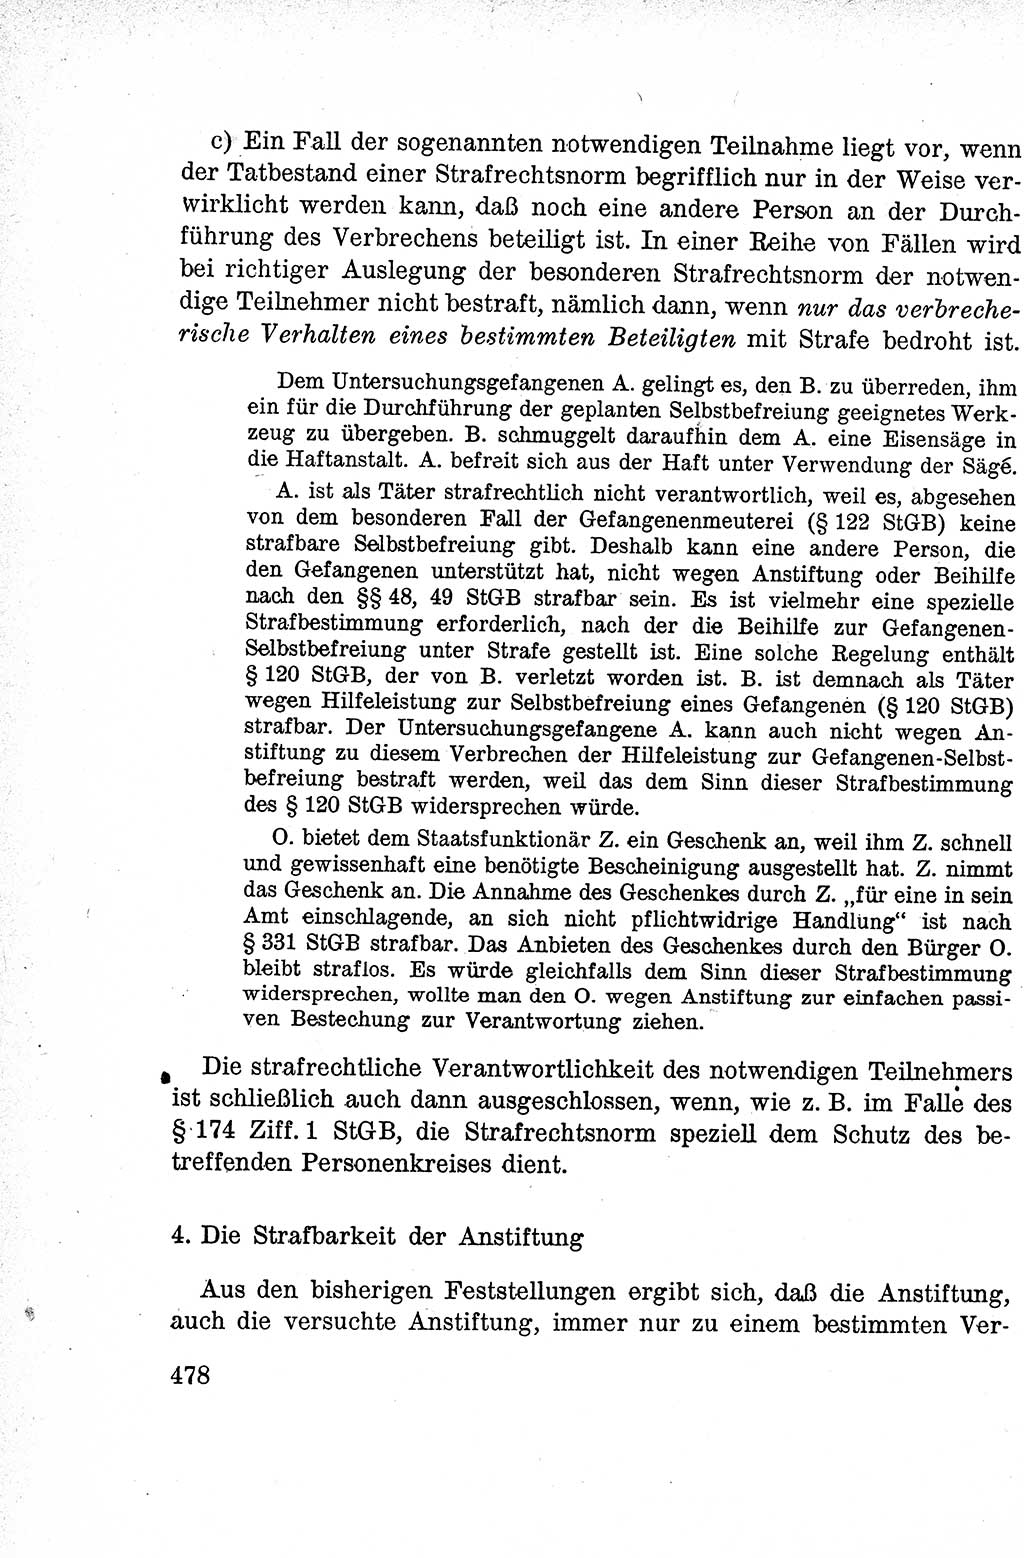 Lehrbuch des Strafrechts der Deutschen Demokratischen Republik (DDR), Allgemeiner Teil 1959, Seite 478 (Lb. Strafr. DDR AT 1959, S. 478)